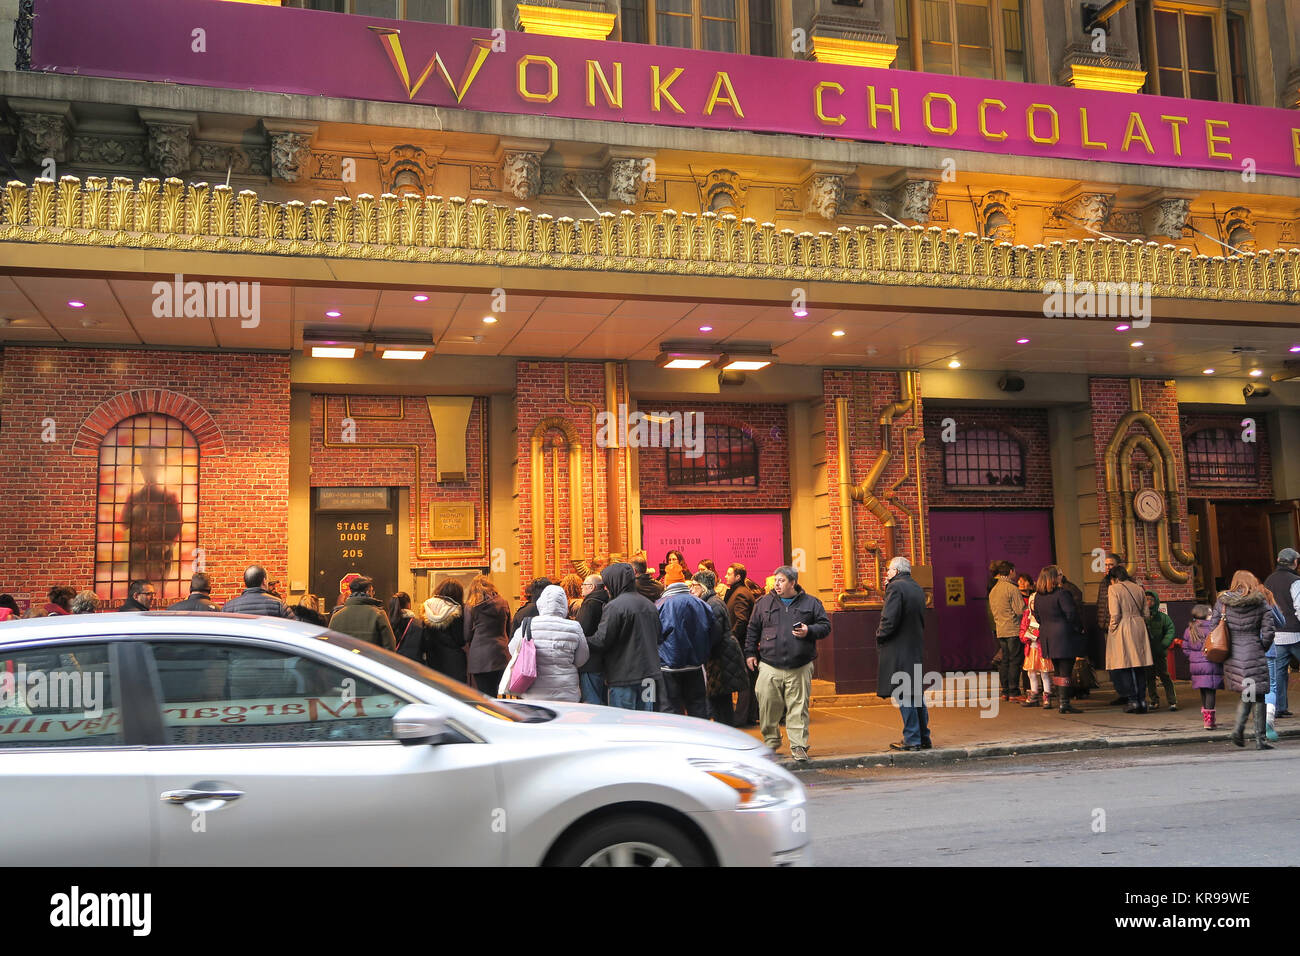 Tifosi in attesa al di fuori della fase di Porta il teatro Lunt-Fontanne per Roald Dahl di Charlie e la Fabbrica di Cioccolato, NYC, STATI UNITI D'AMERICA Foto Stock